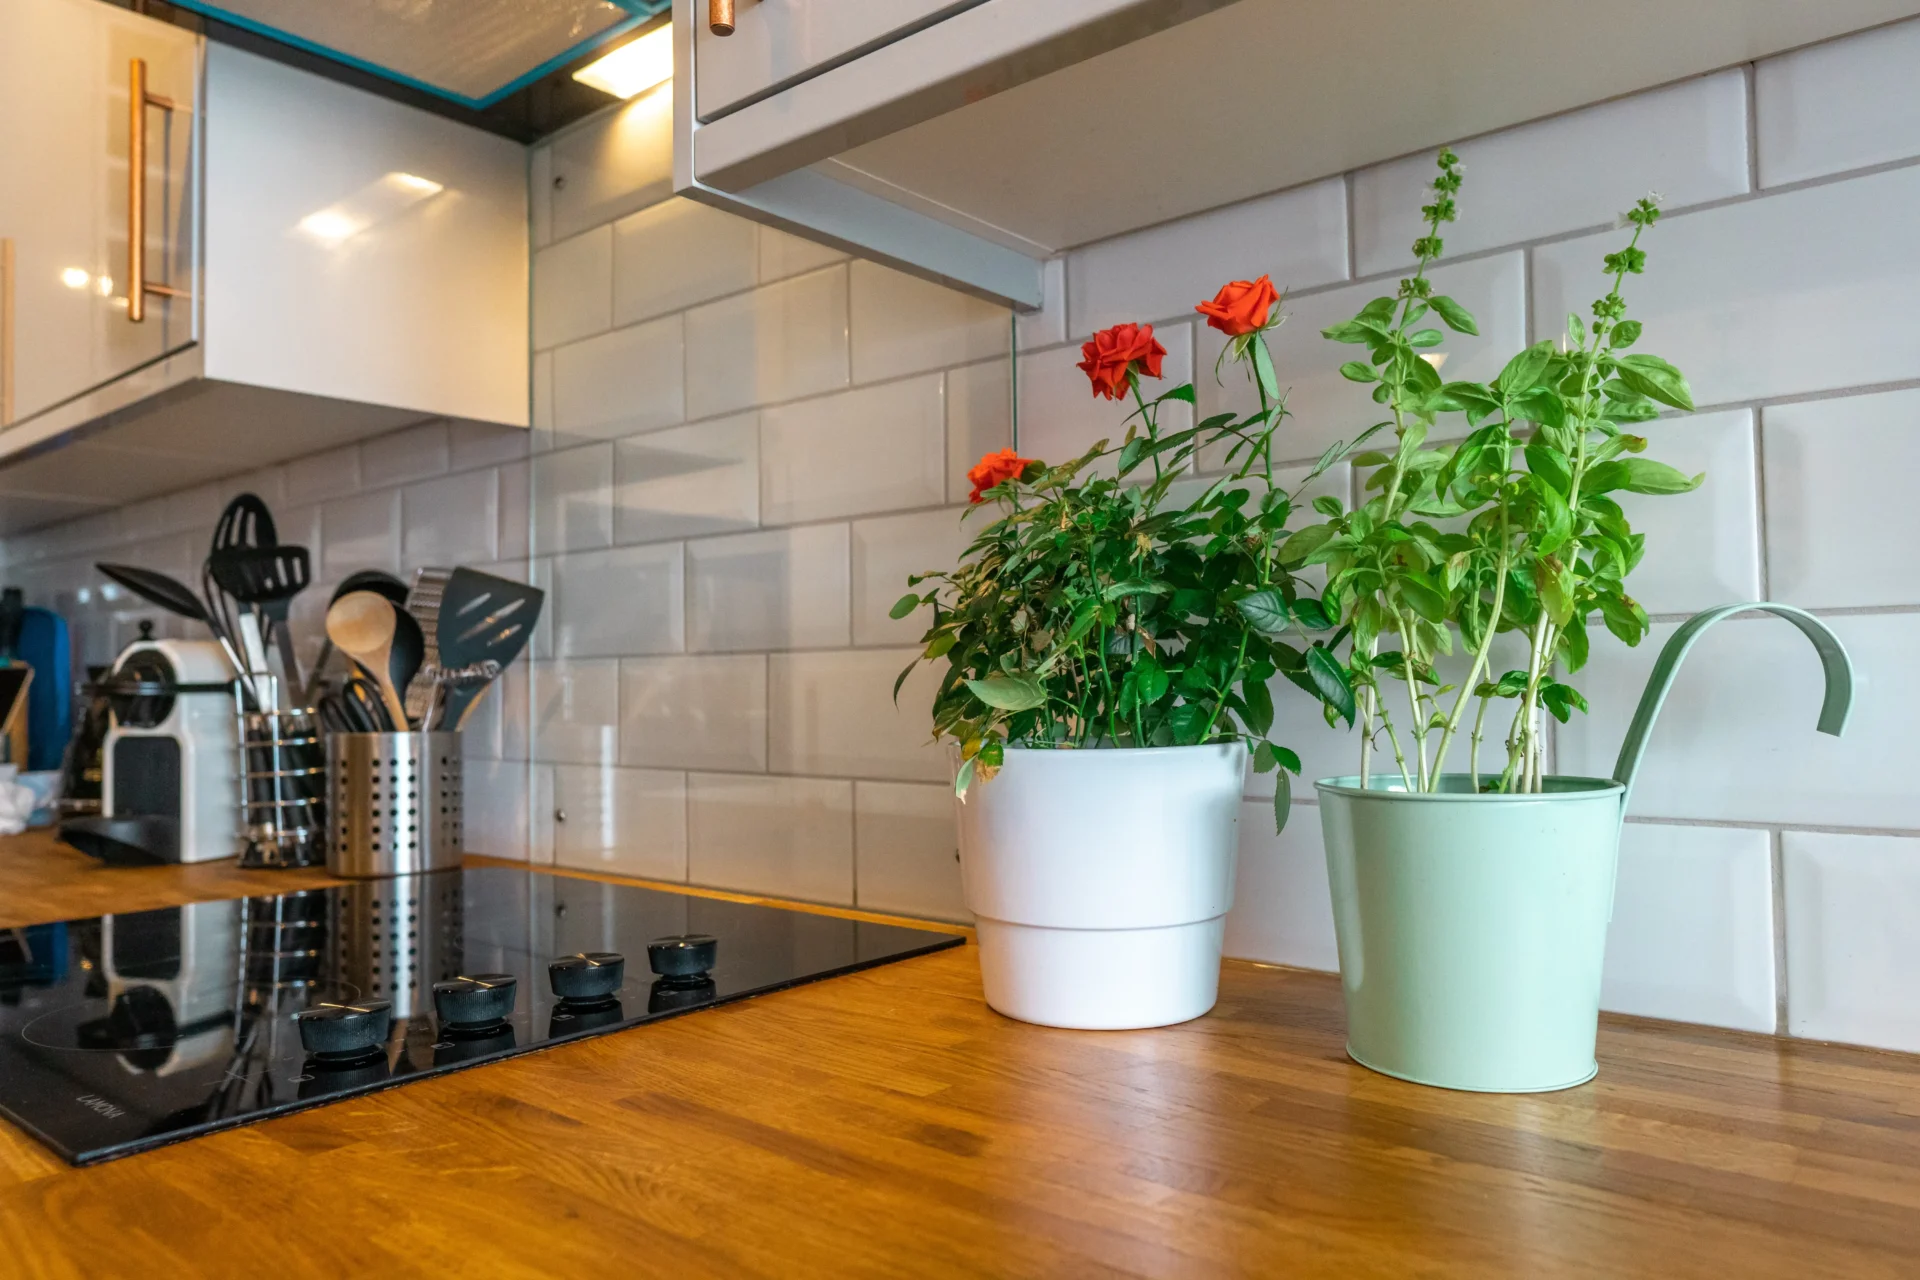 kitchen plants decor